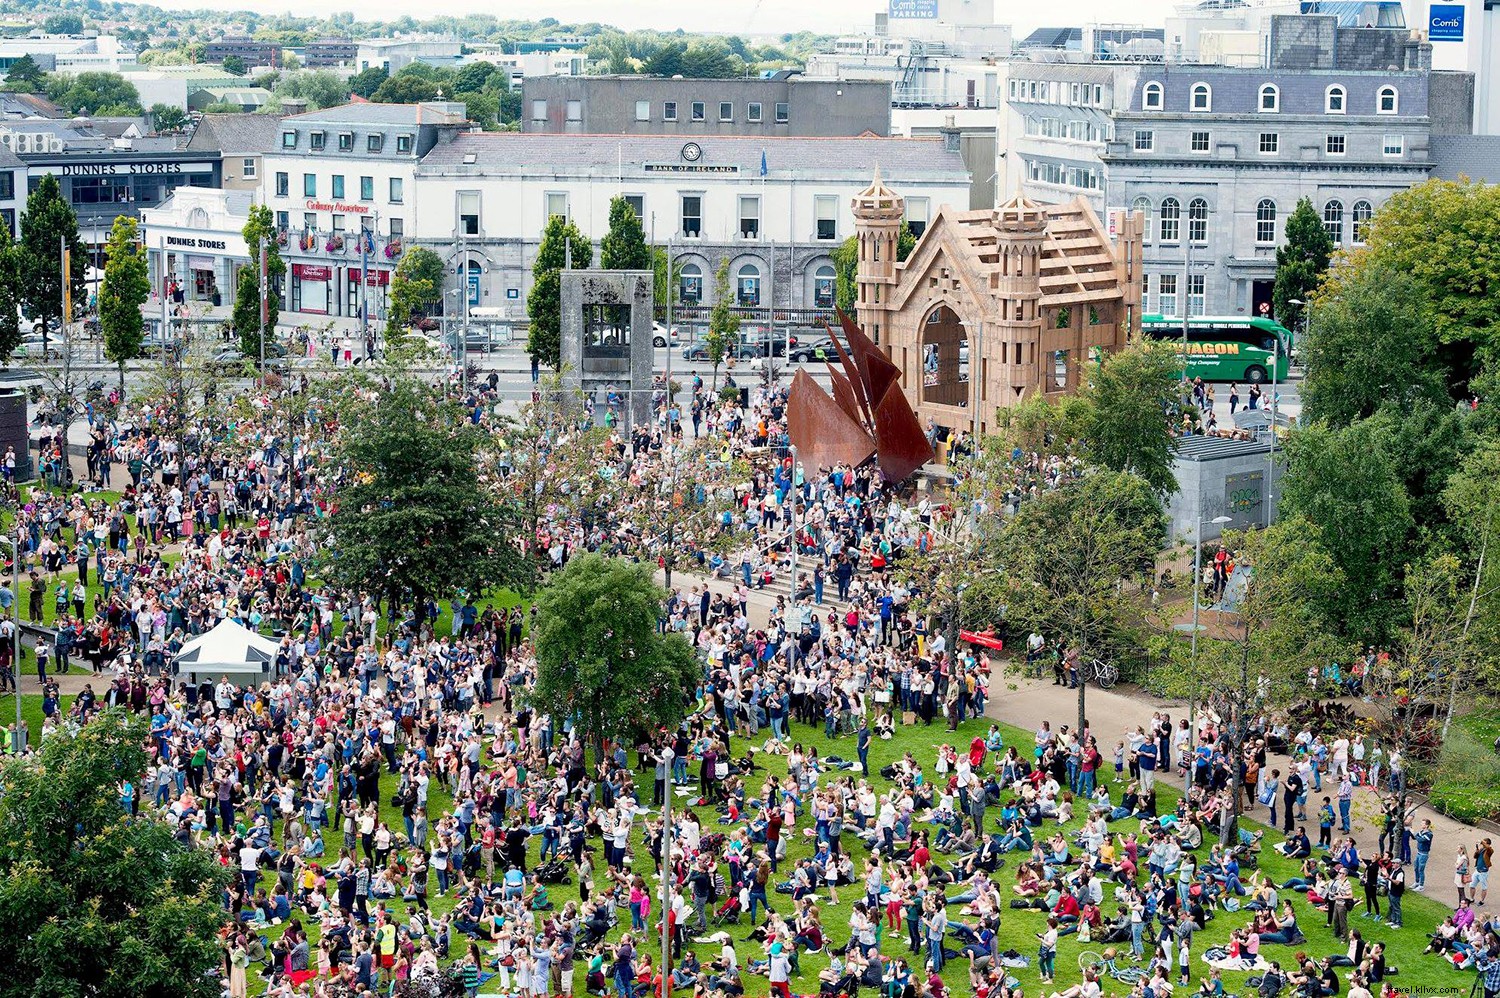 8 Hal yang Perlu Anda Ketahui tentang Galway International Arts Festival 